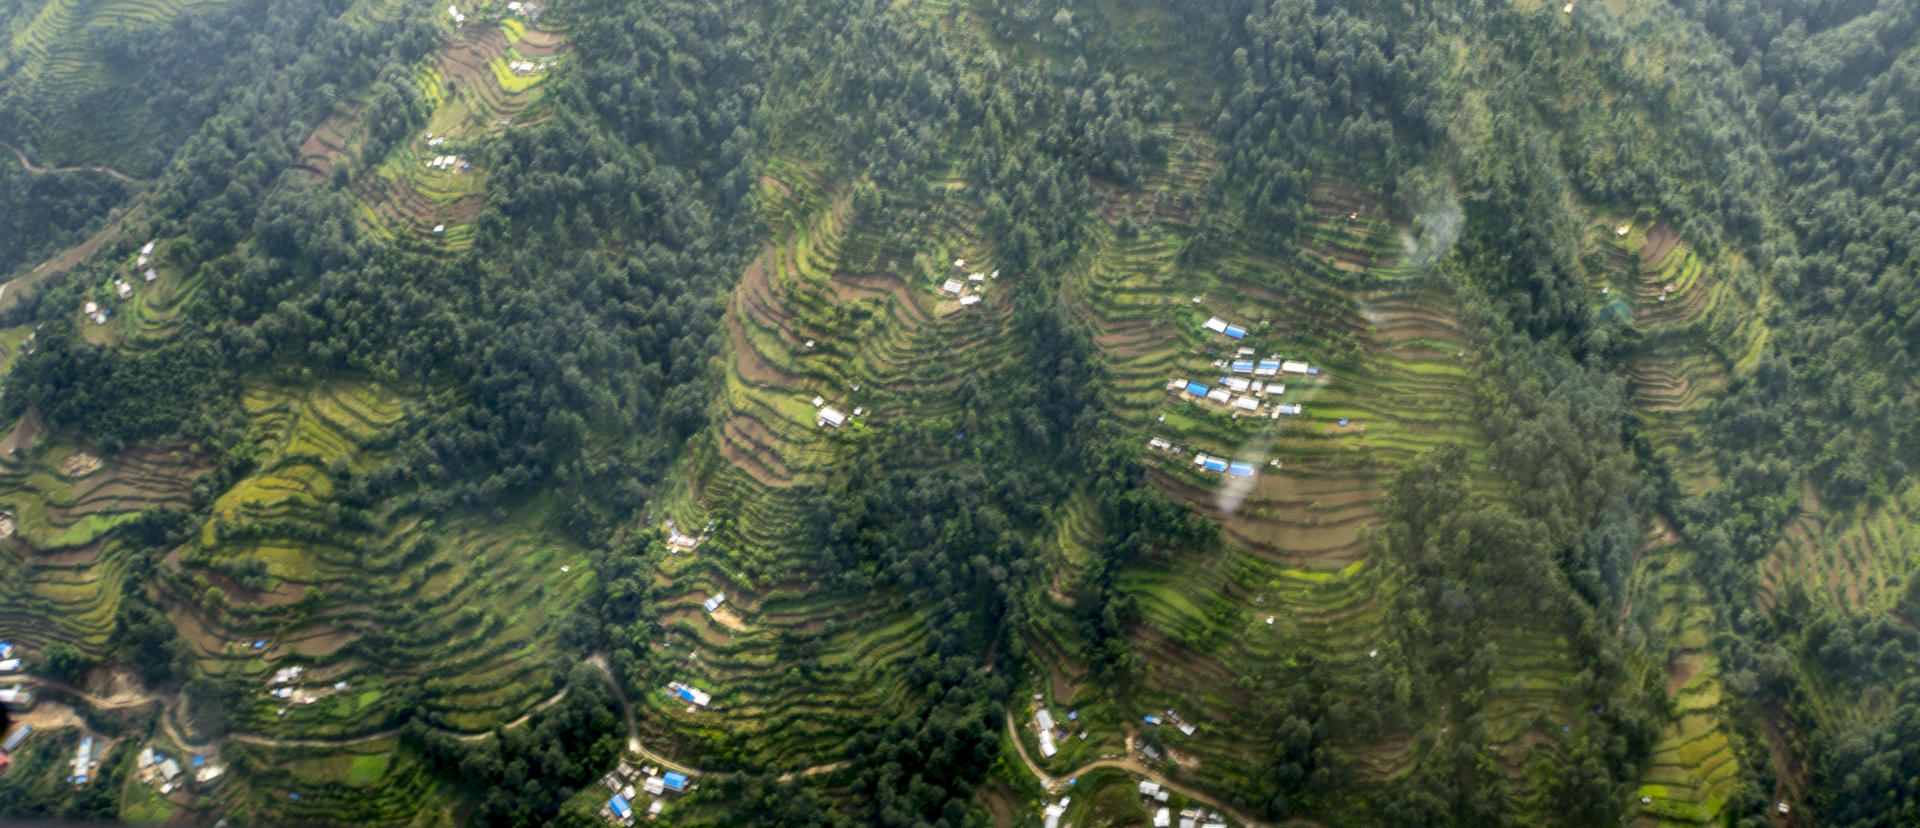 Vertical farming Himalayas